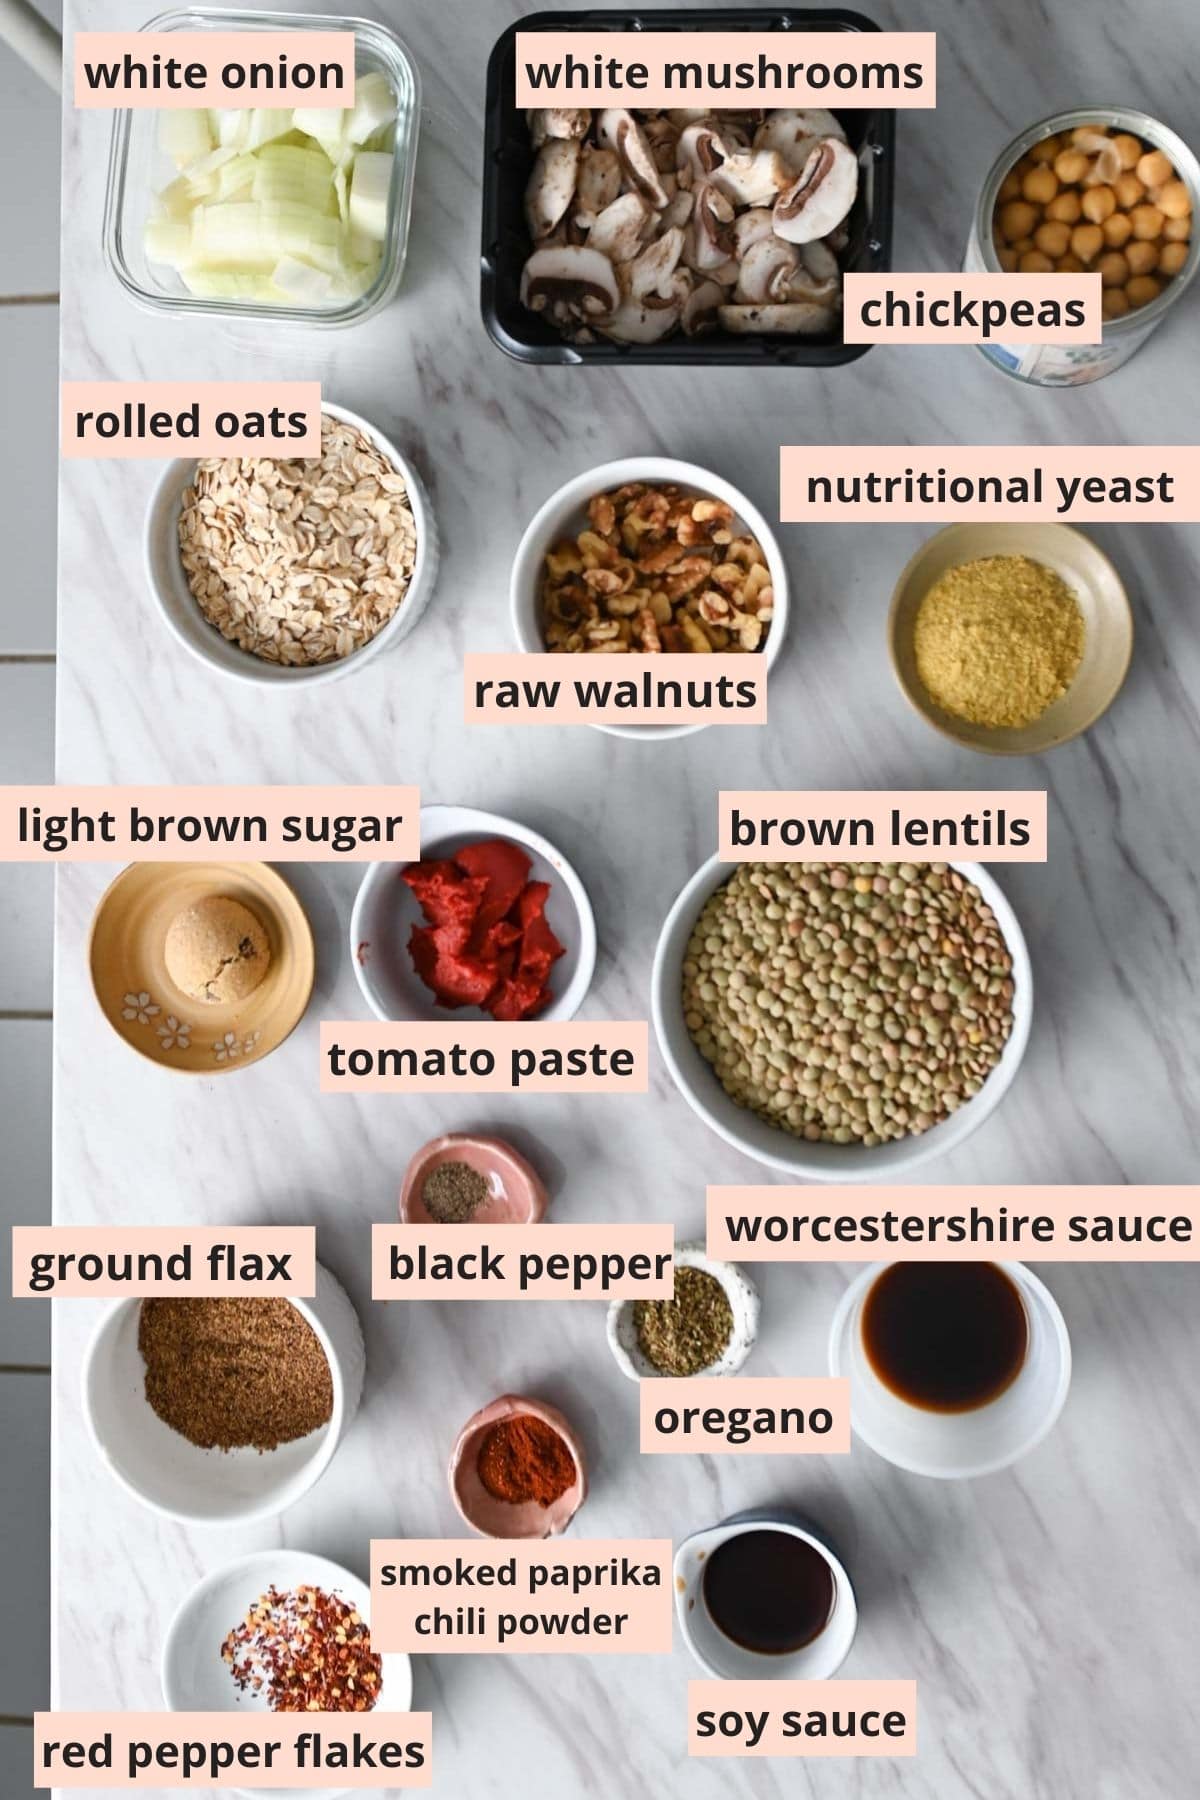 Labeled ingredients used to make lentil loaf